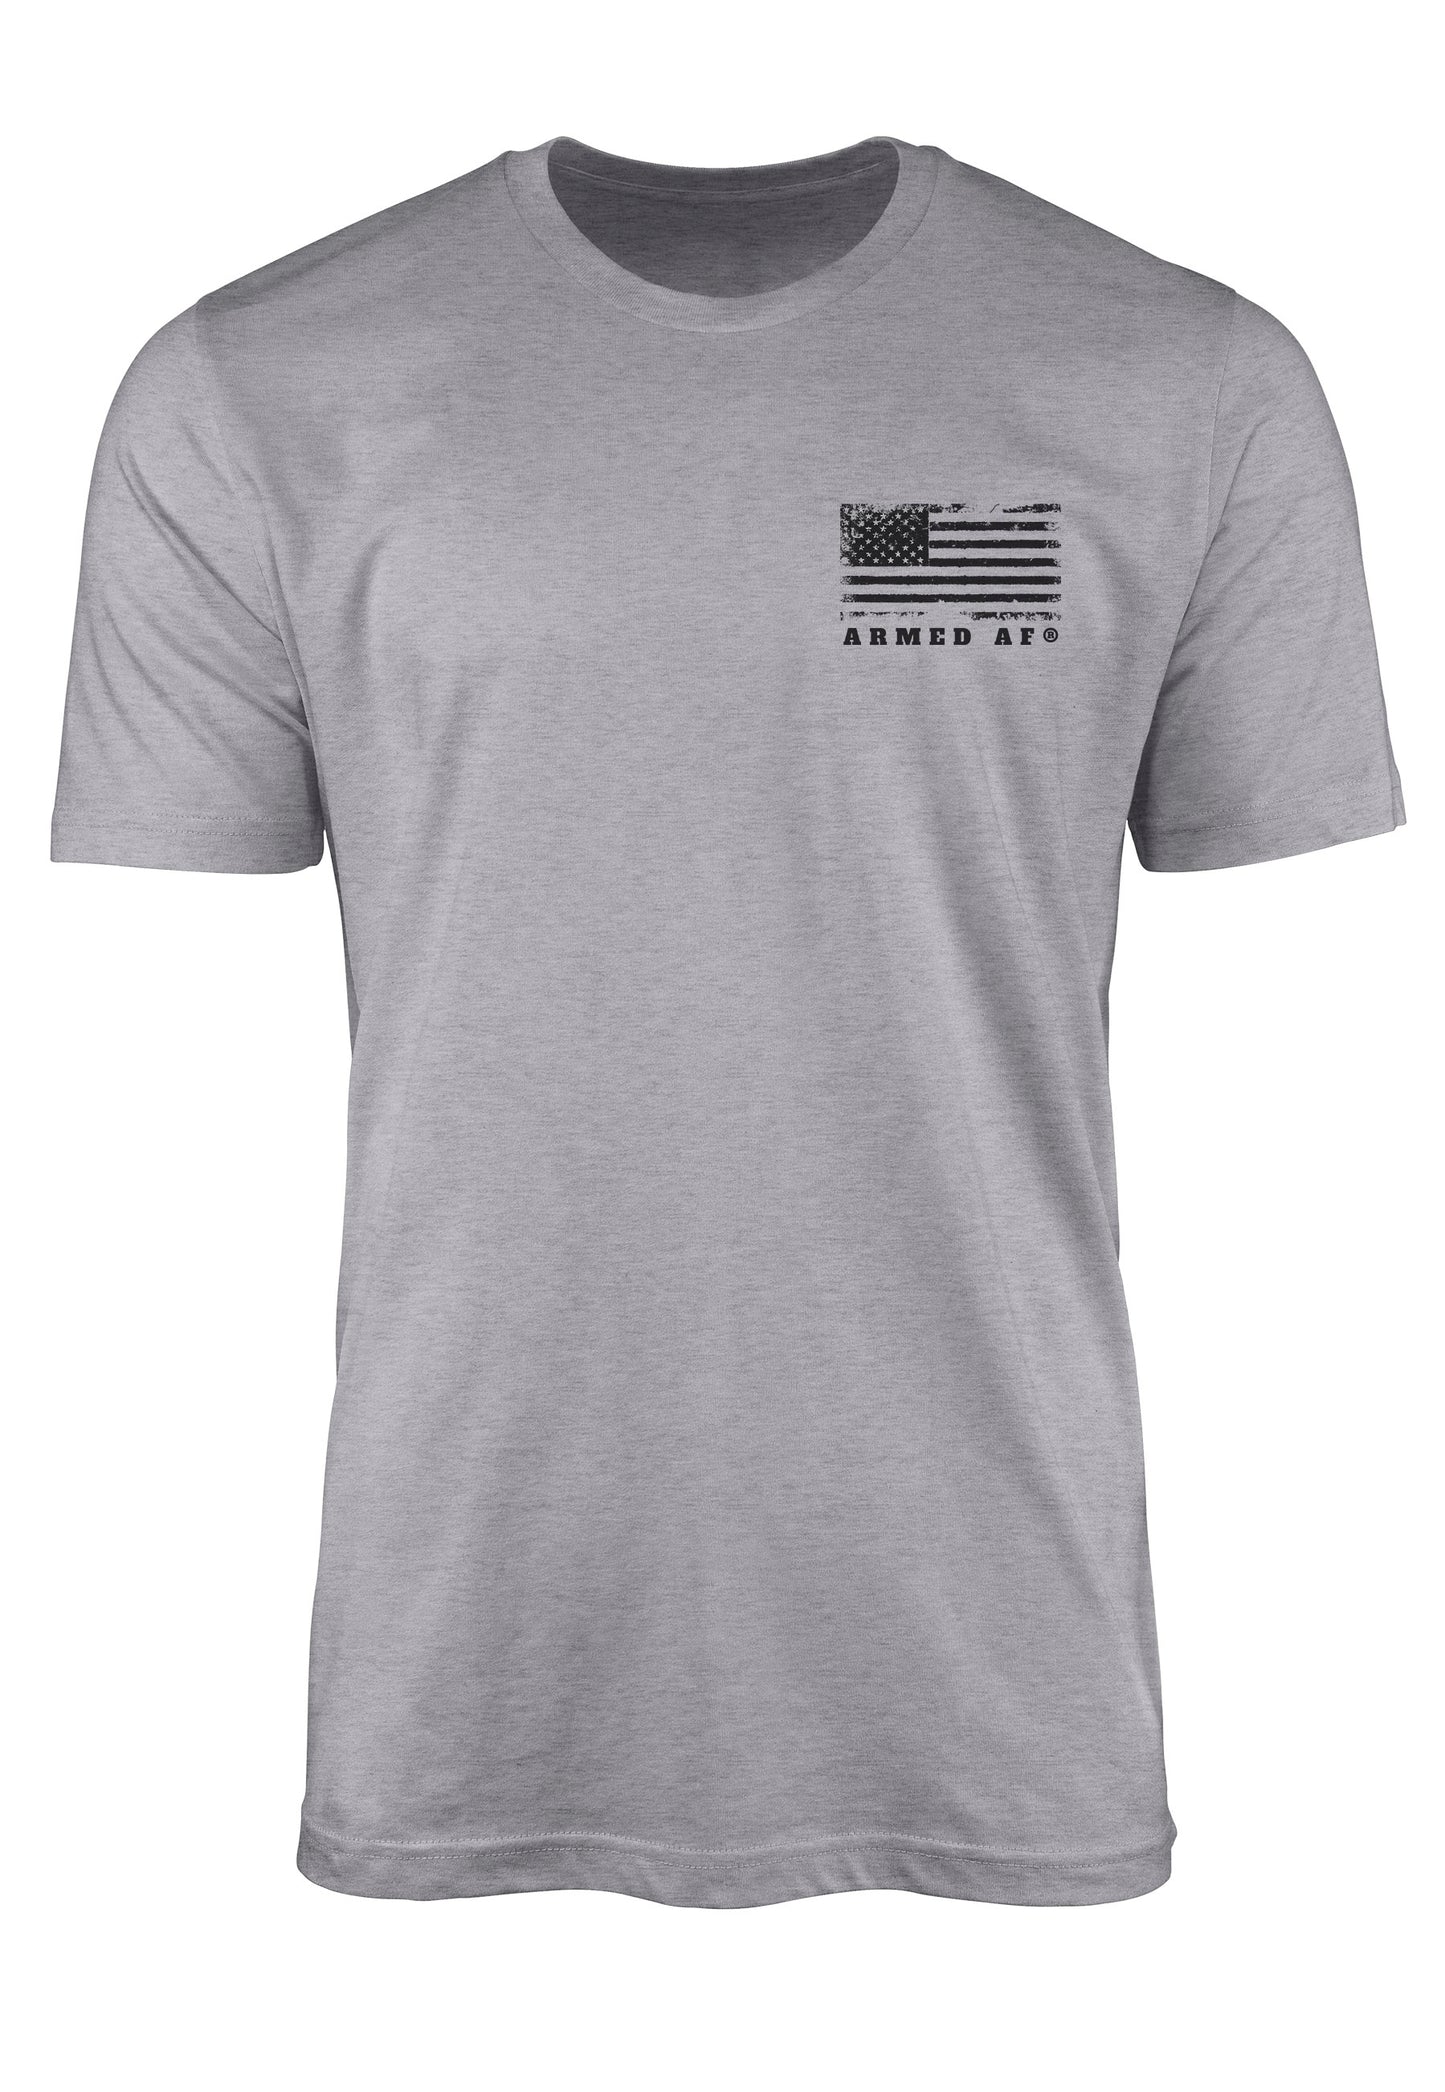 Armed AF® logo on chest of t-shirt